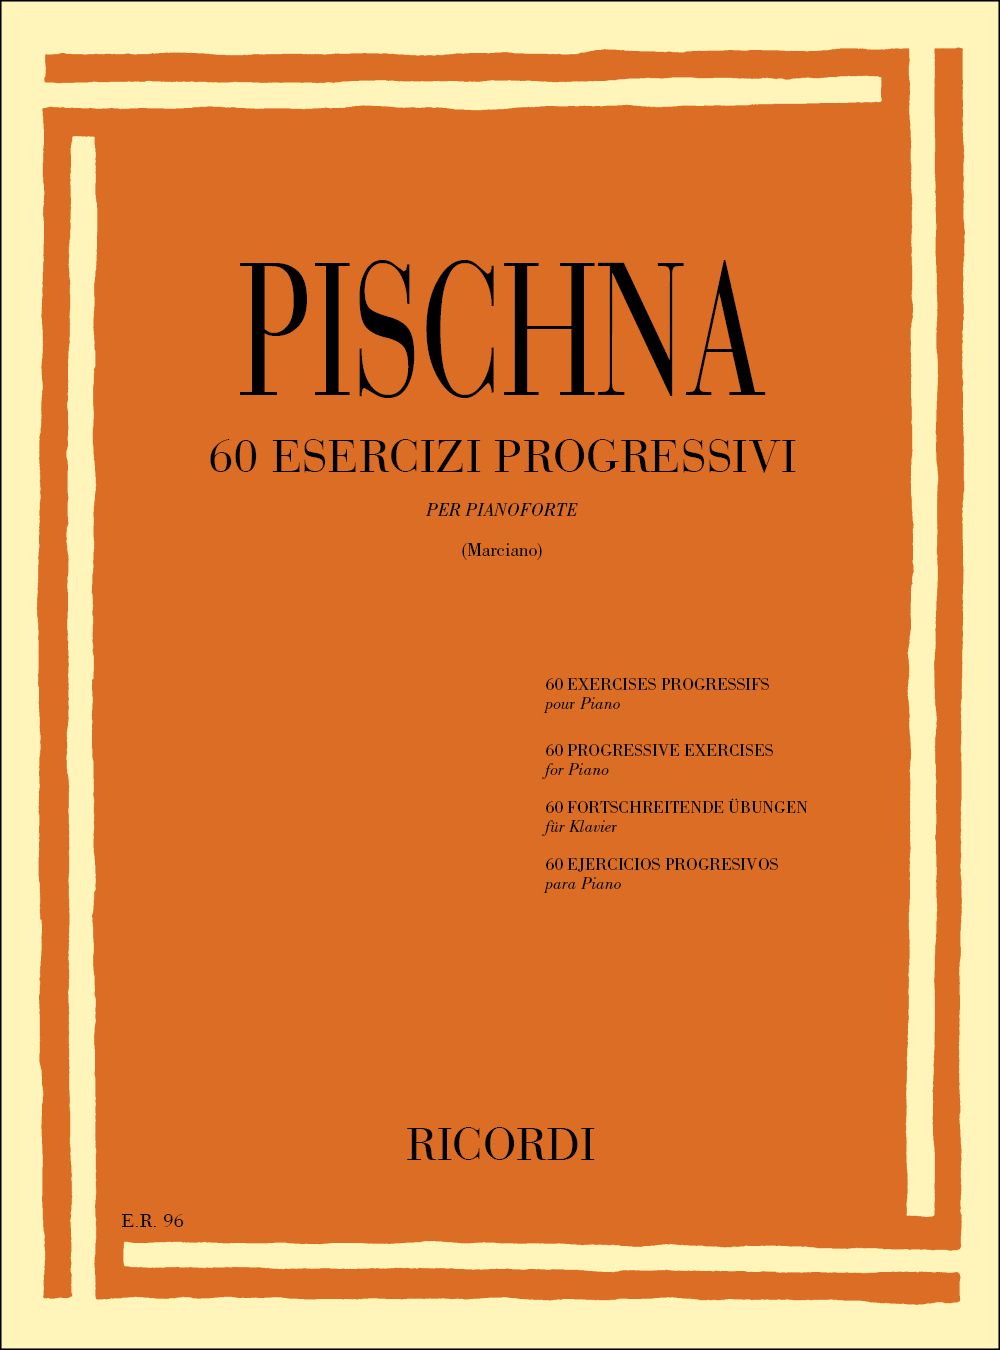 J. Pischna: 60 Esercizi Progressivi: Piano